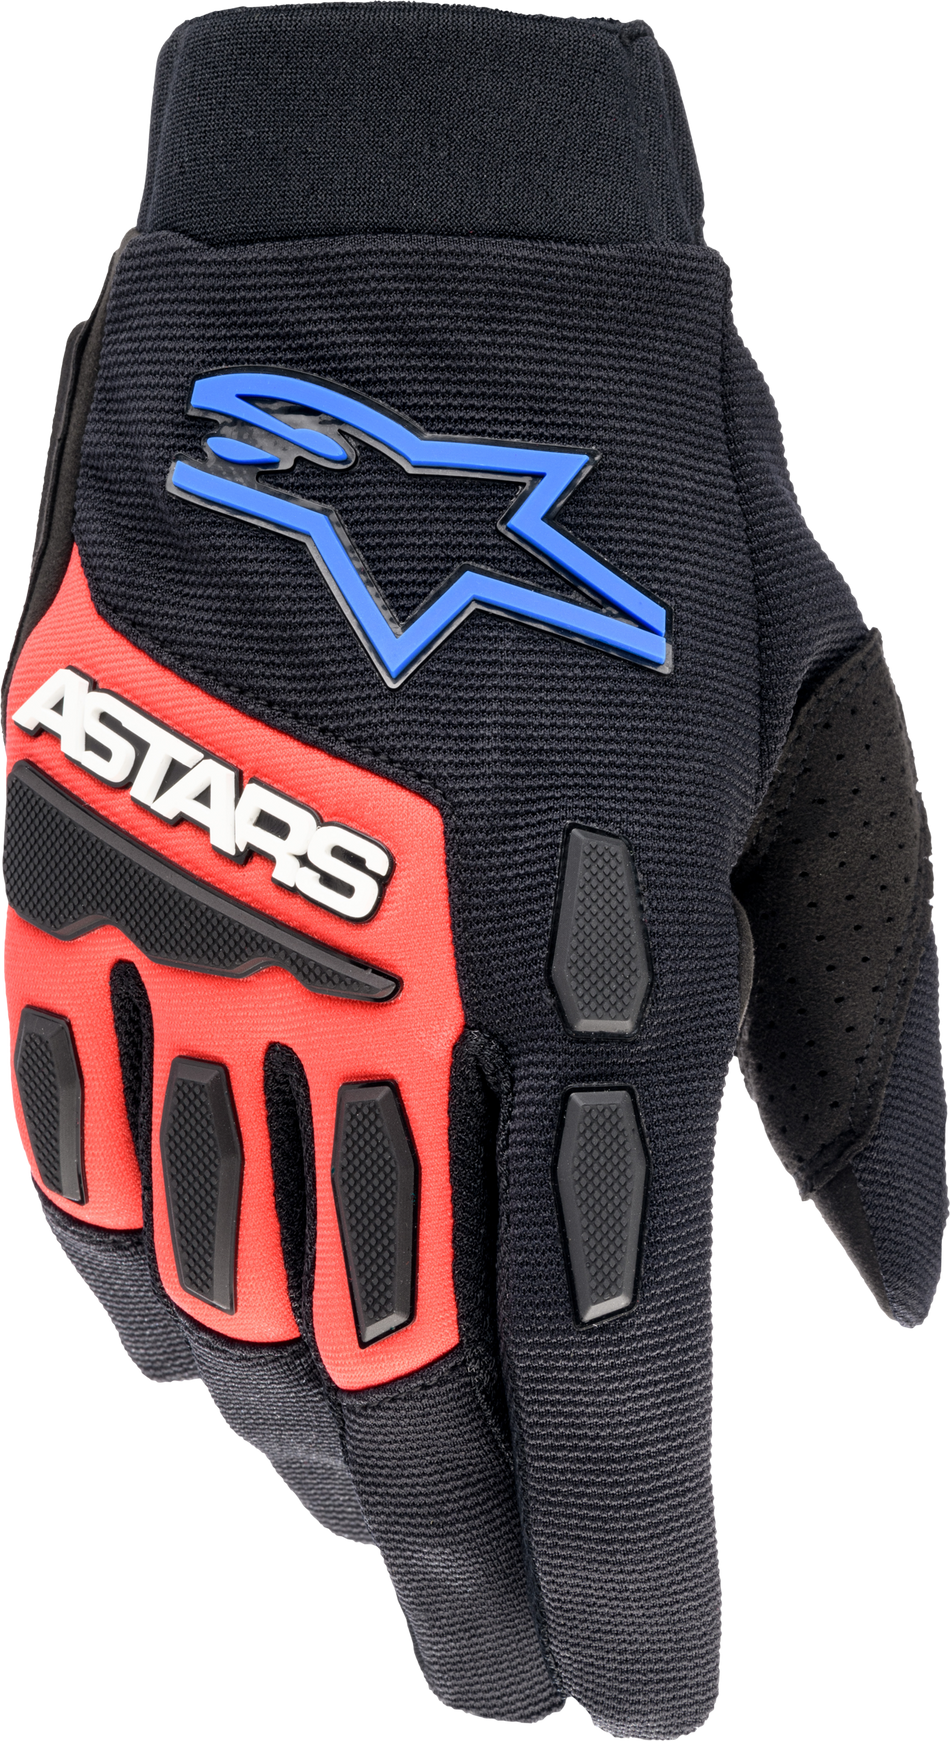 ALPINESTARS Full Bore Xt Gloves Black/Bright Blue/Red 2x 3563623-1317-XXL